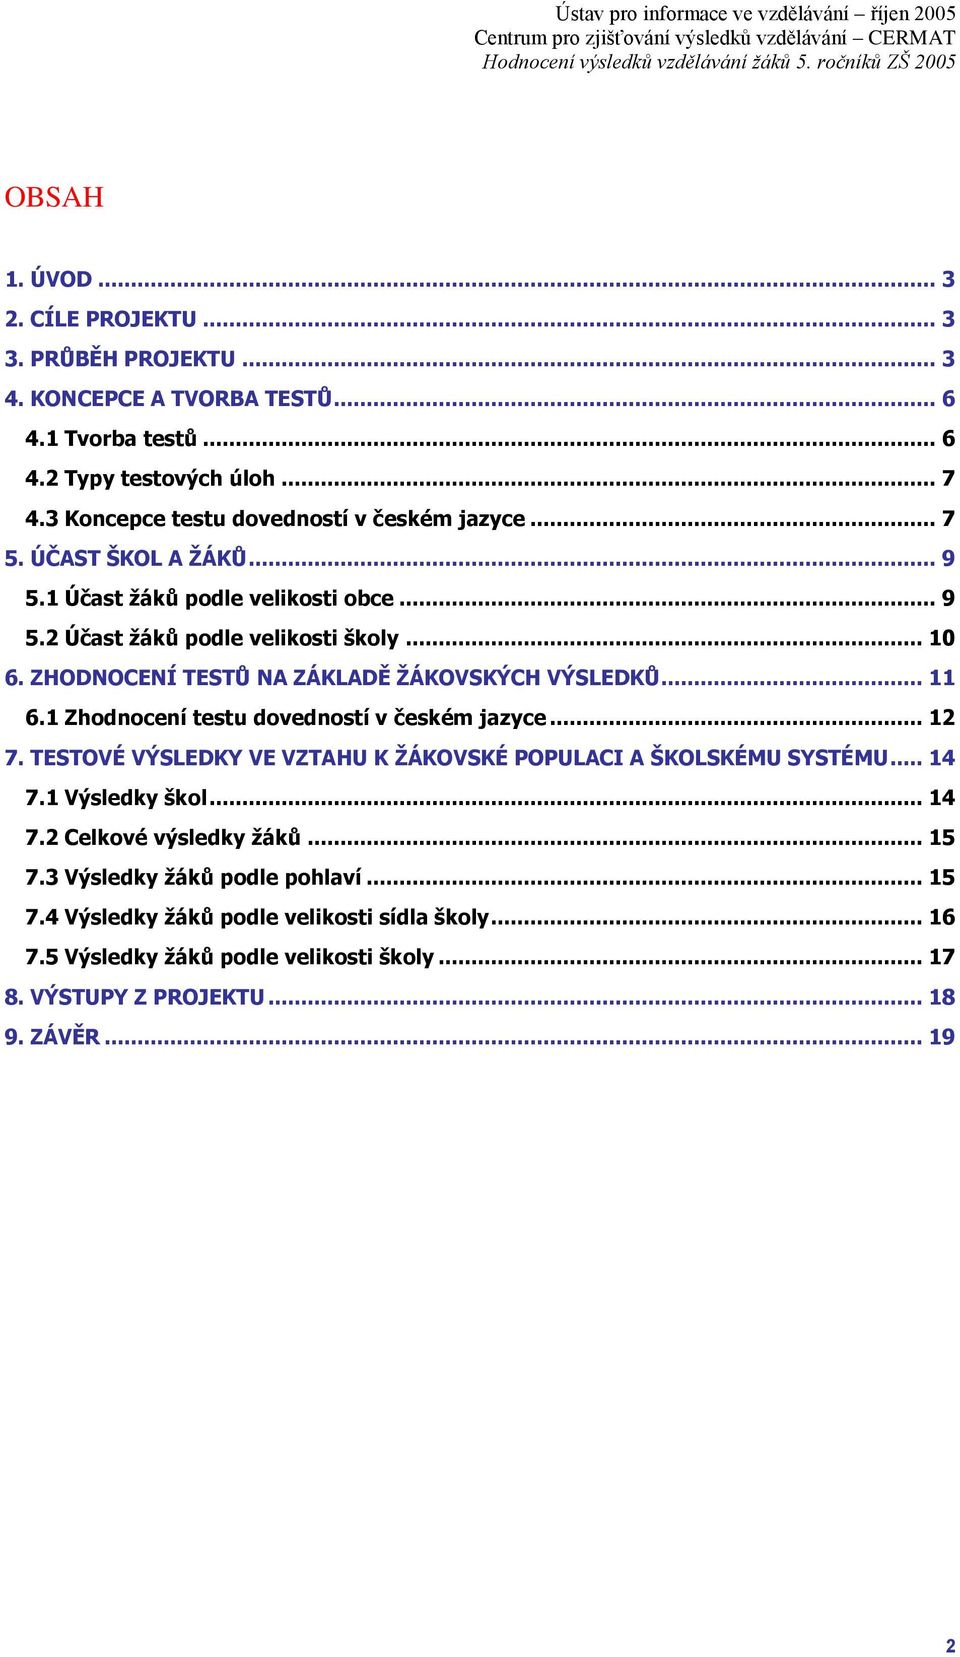 ZHODNOCENÍ TESTŮ NA ZÁKLADĚ ŢÁKOVSKÝCH VÝSLEDKŮ... 11 6.1 Zhodnocení testu dovedností v českém jazyce... 12 7. TESTOVÉ VÝSLEDKY VE VZTAHU K ŢÁKOVSKÉ POPULACI A ŠKOLSKÉMU SYSTÉMU.